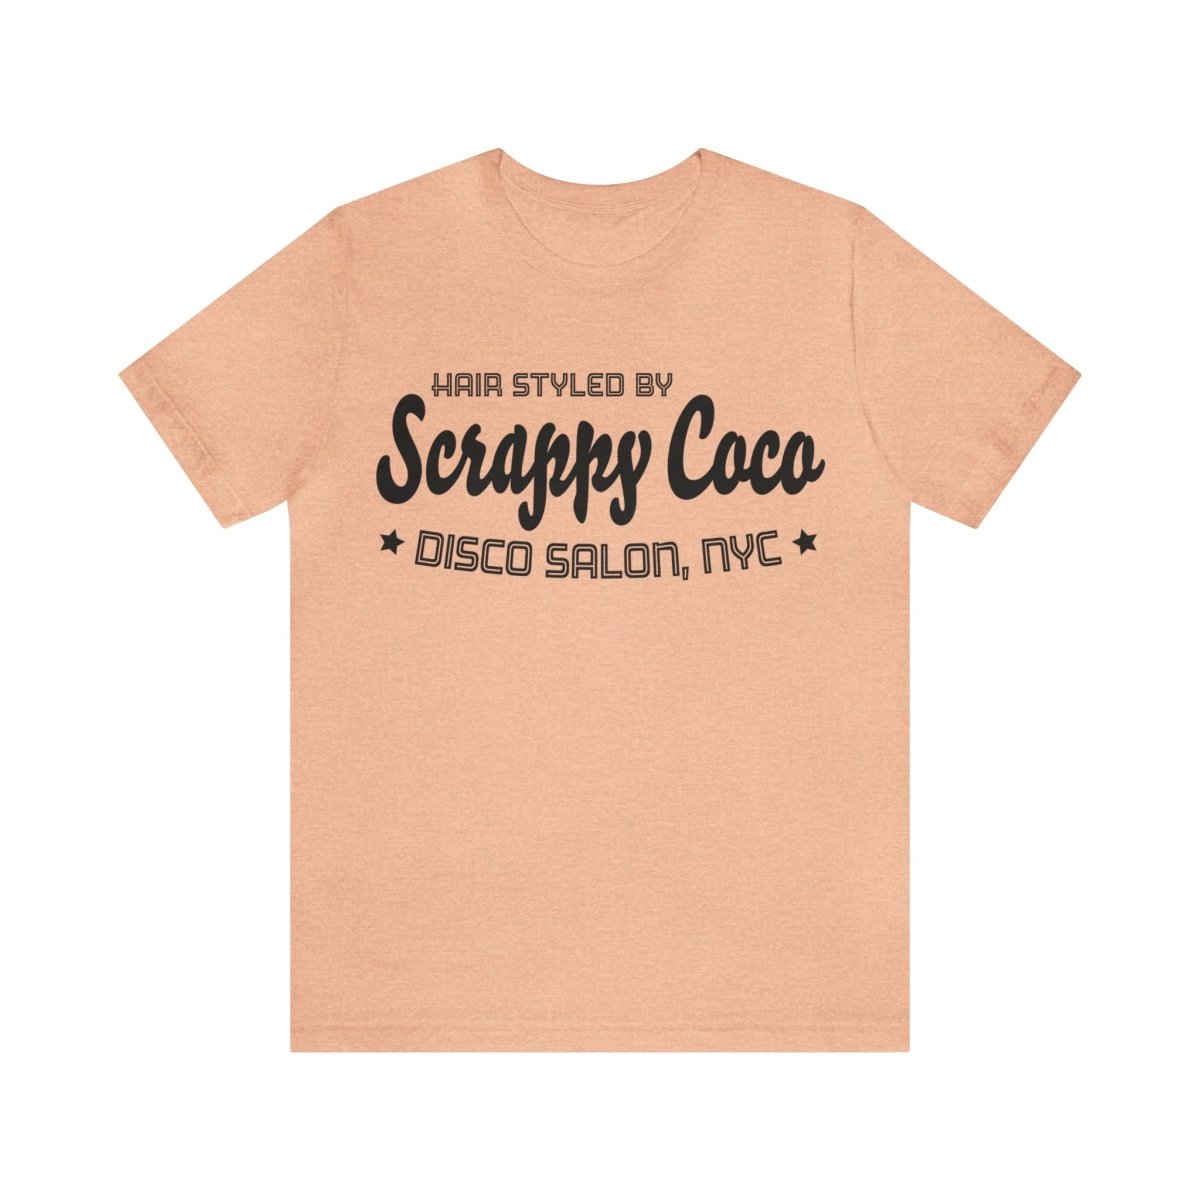 Scrappy Coco Hair Stylist Premium T-Shirt, Disco Salon, Funny